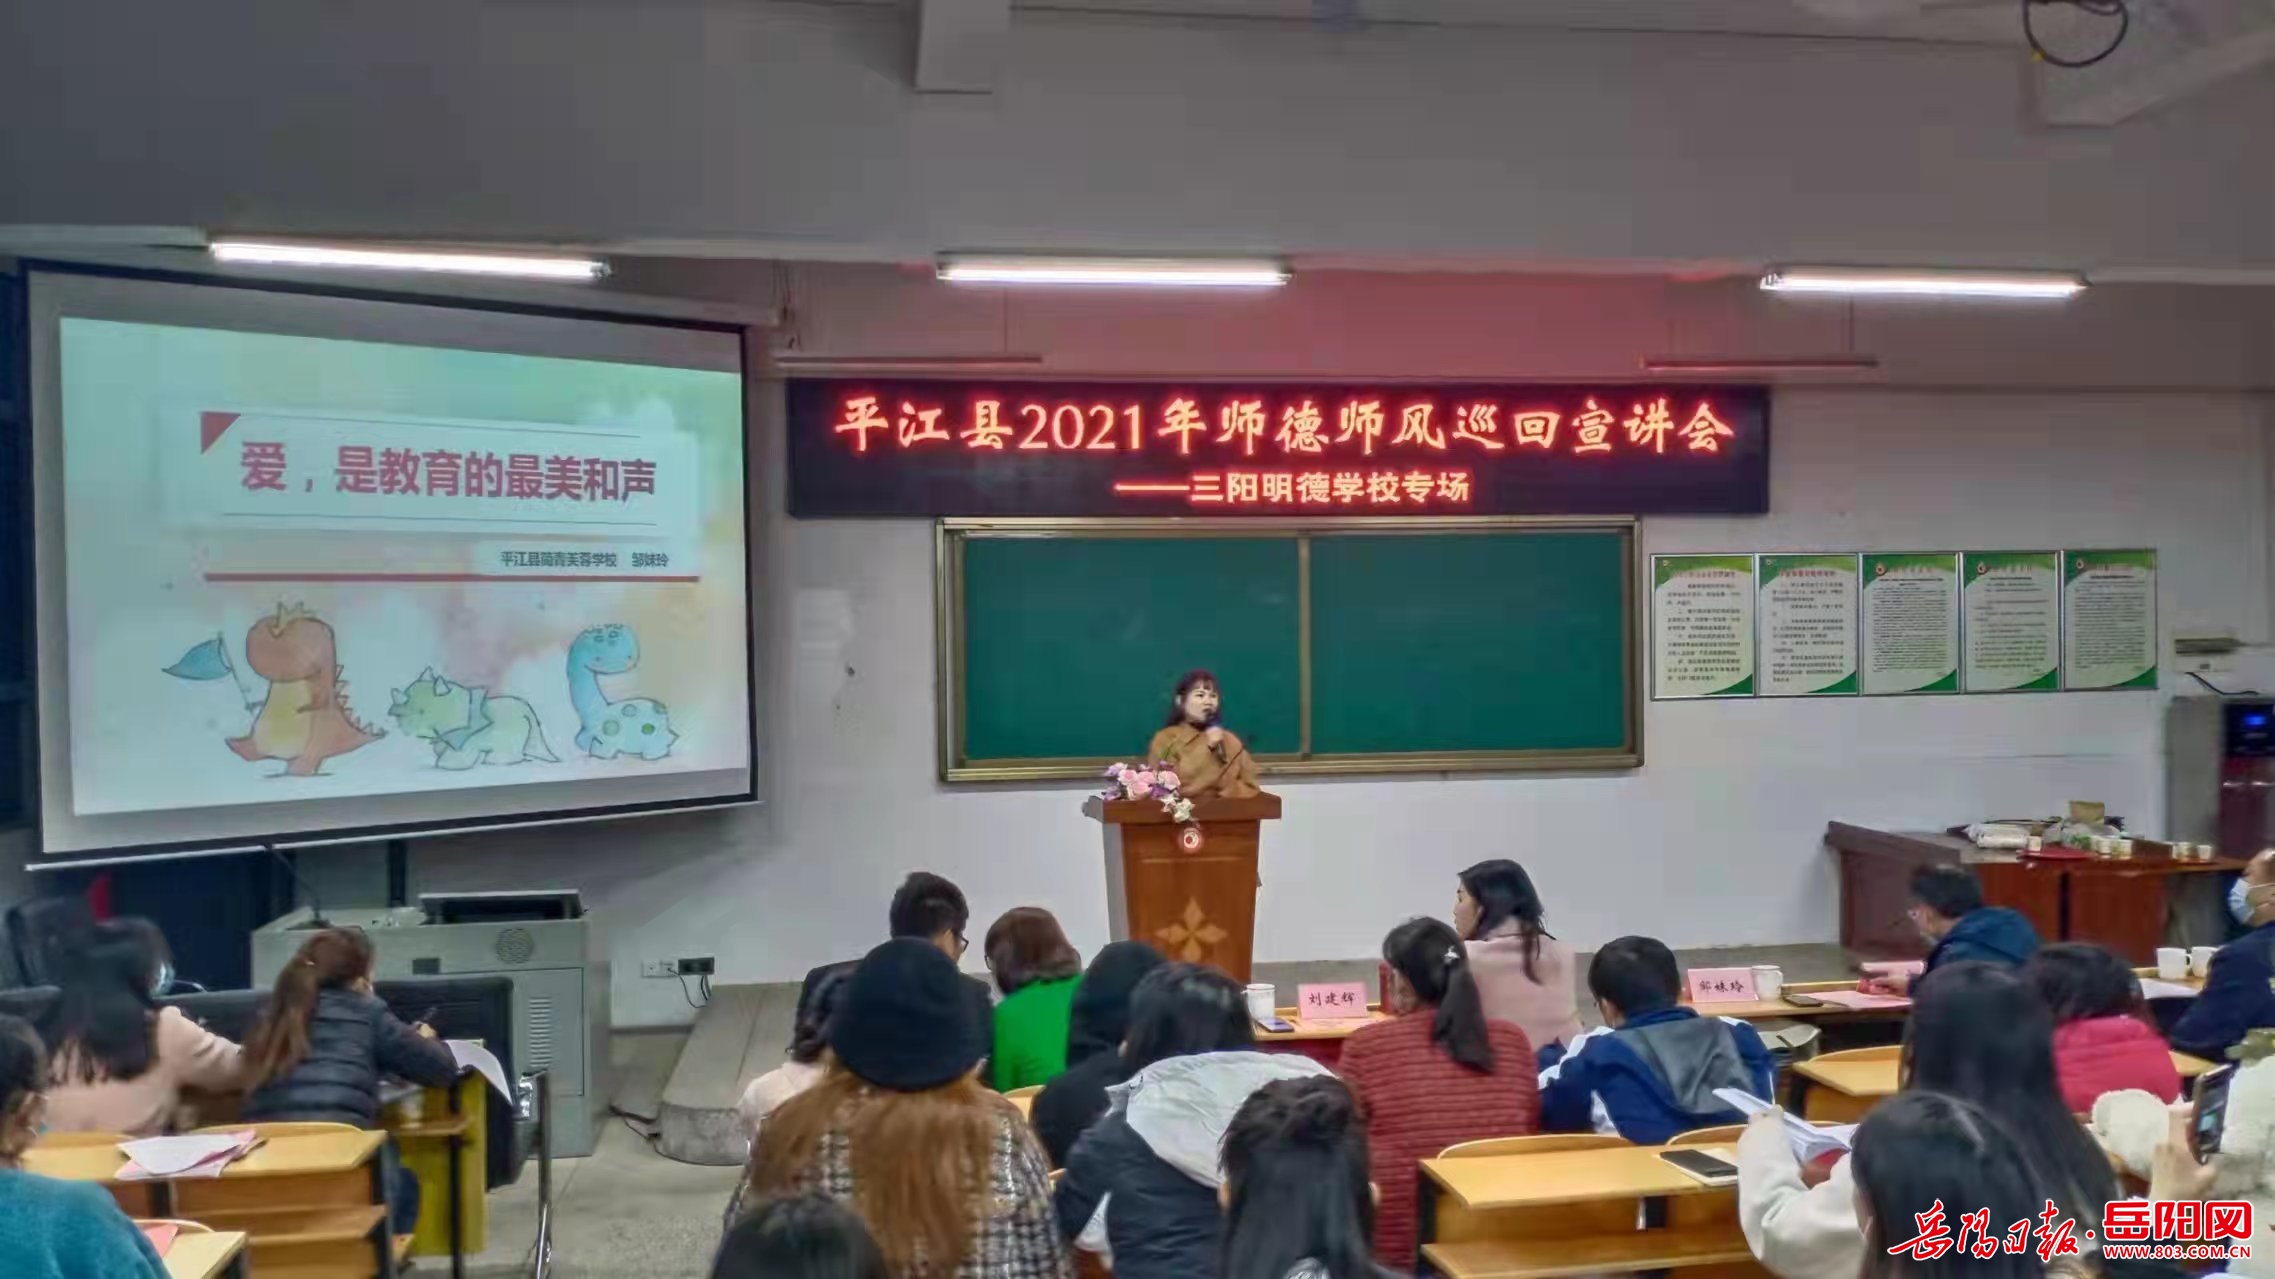 平江县三阳中学老师表图片